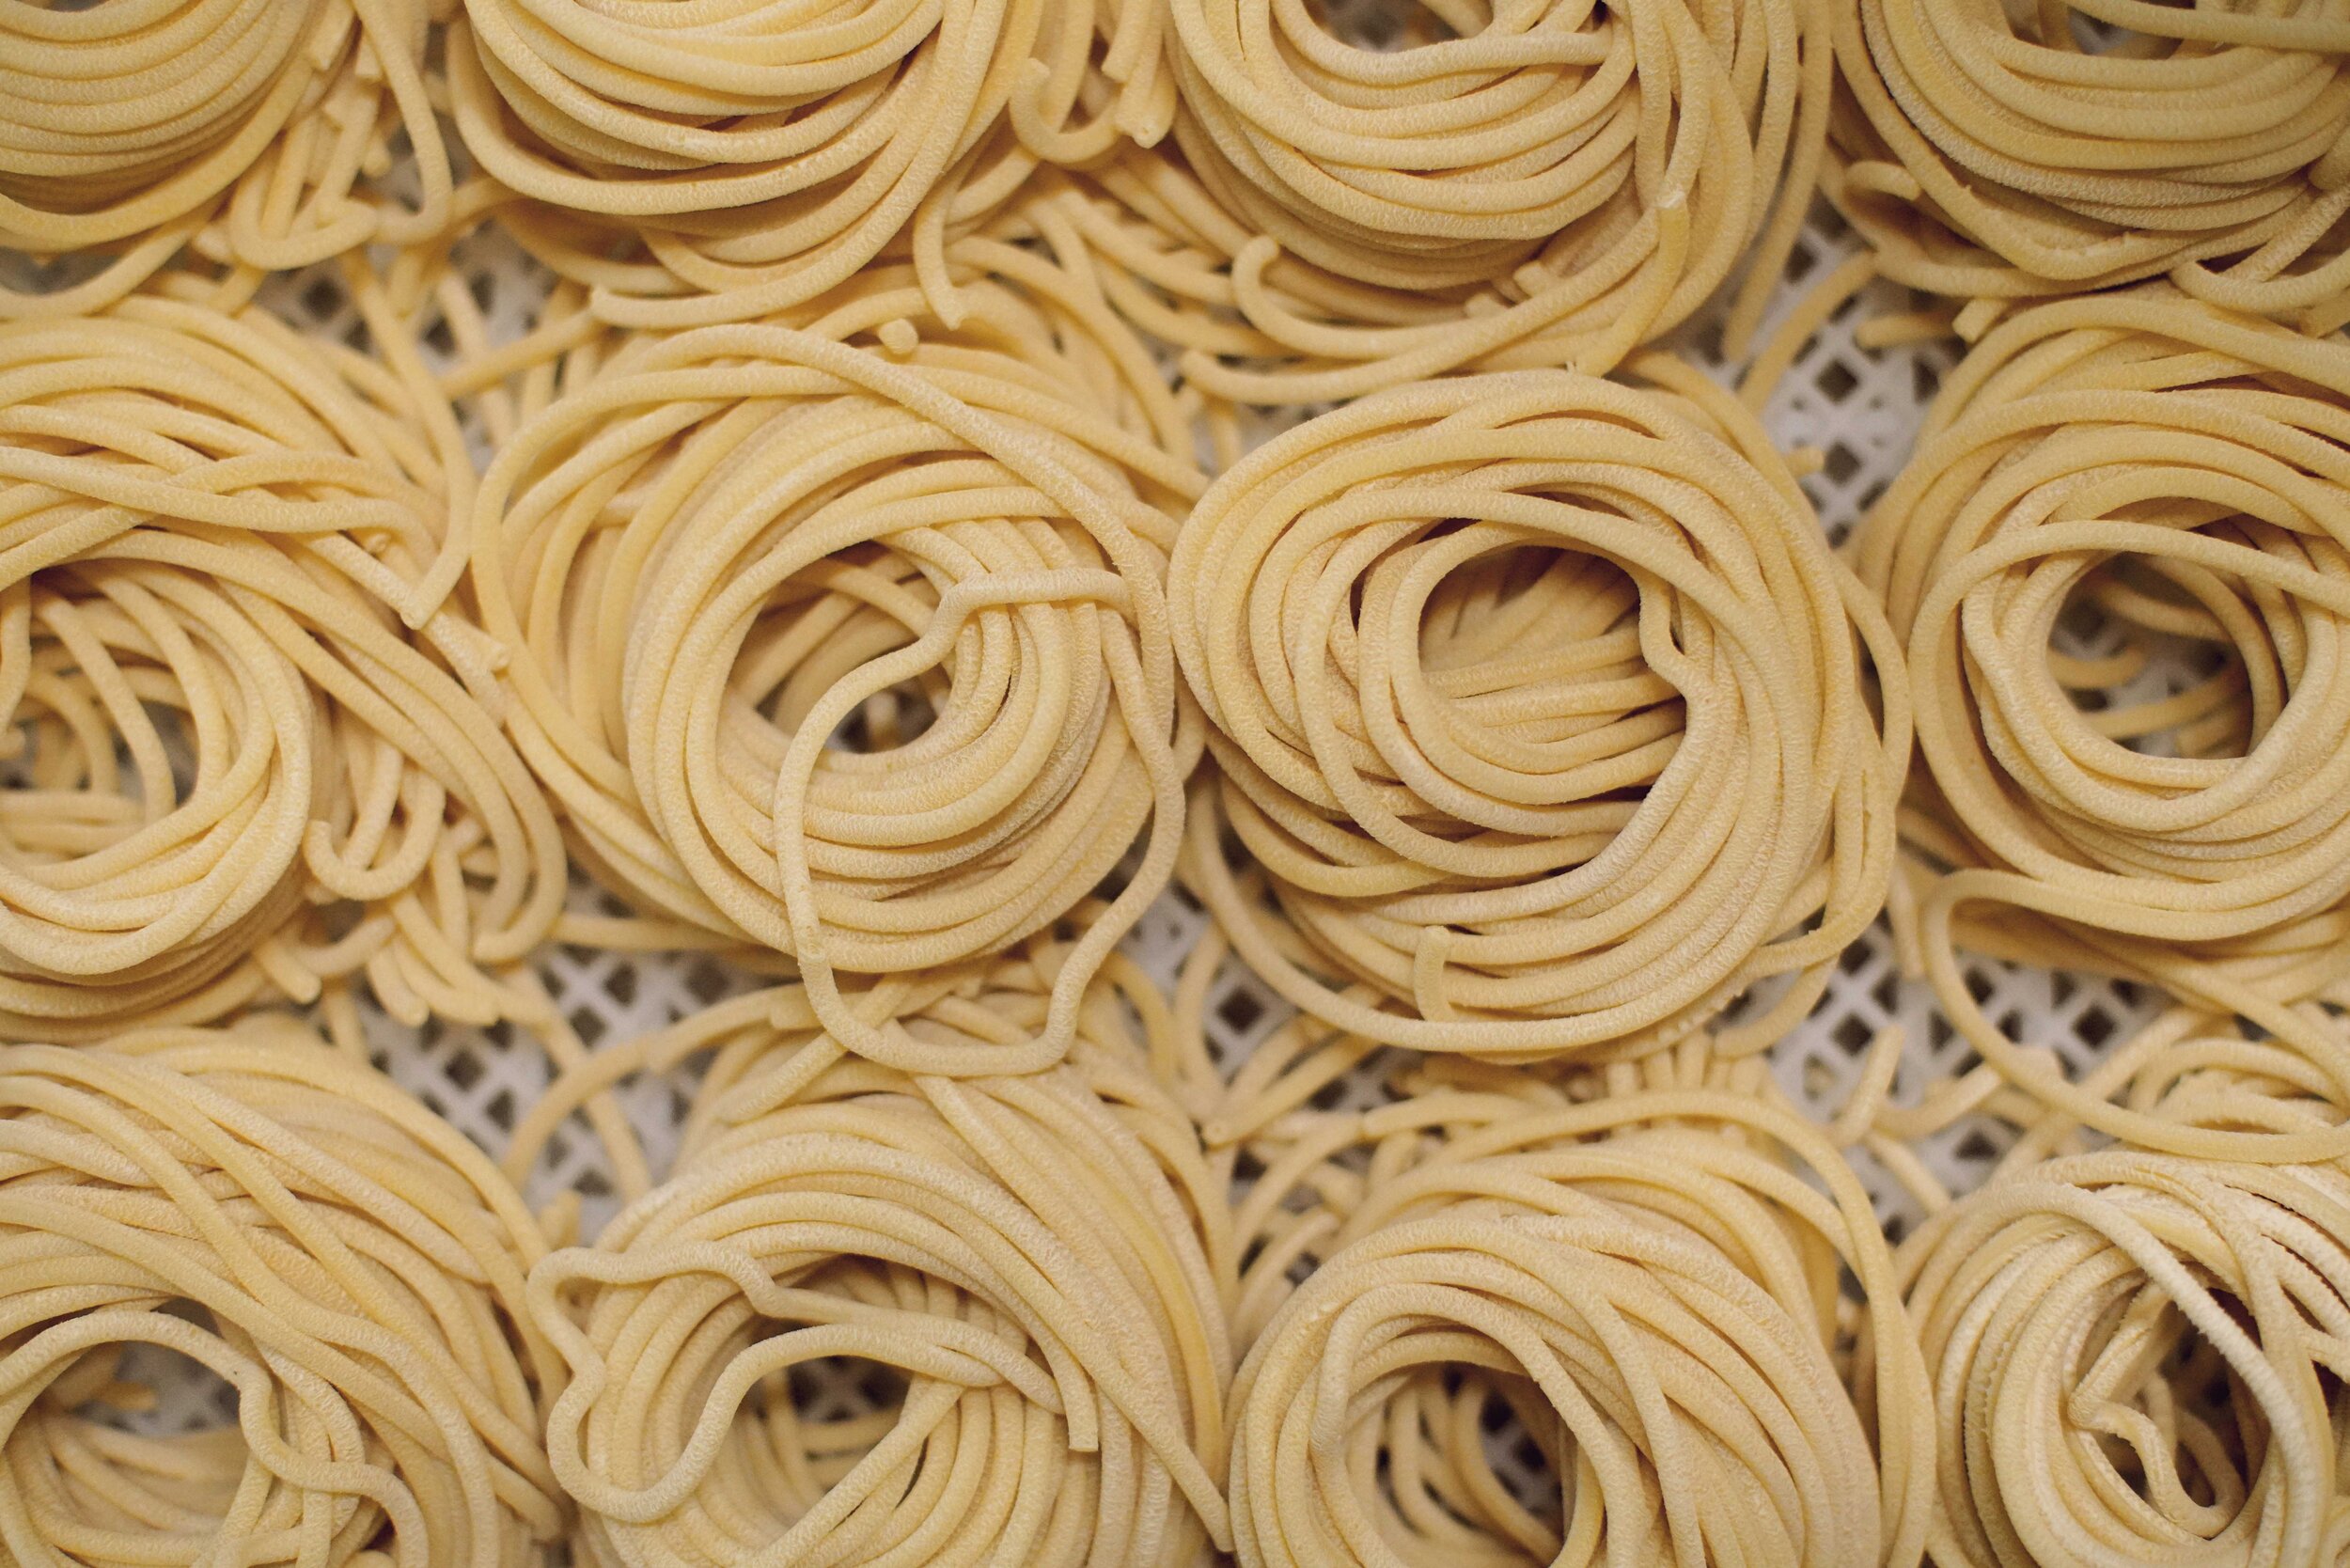 marissa-evans-osteria-pasta-making-1905-small.jpg